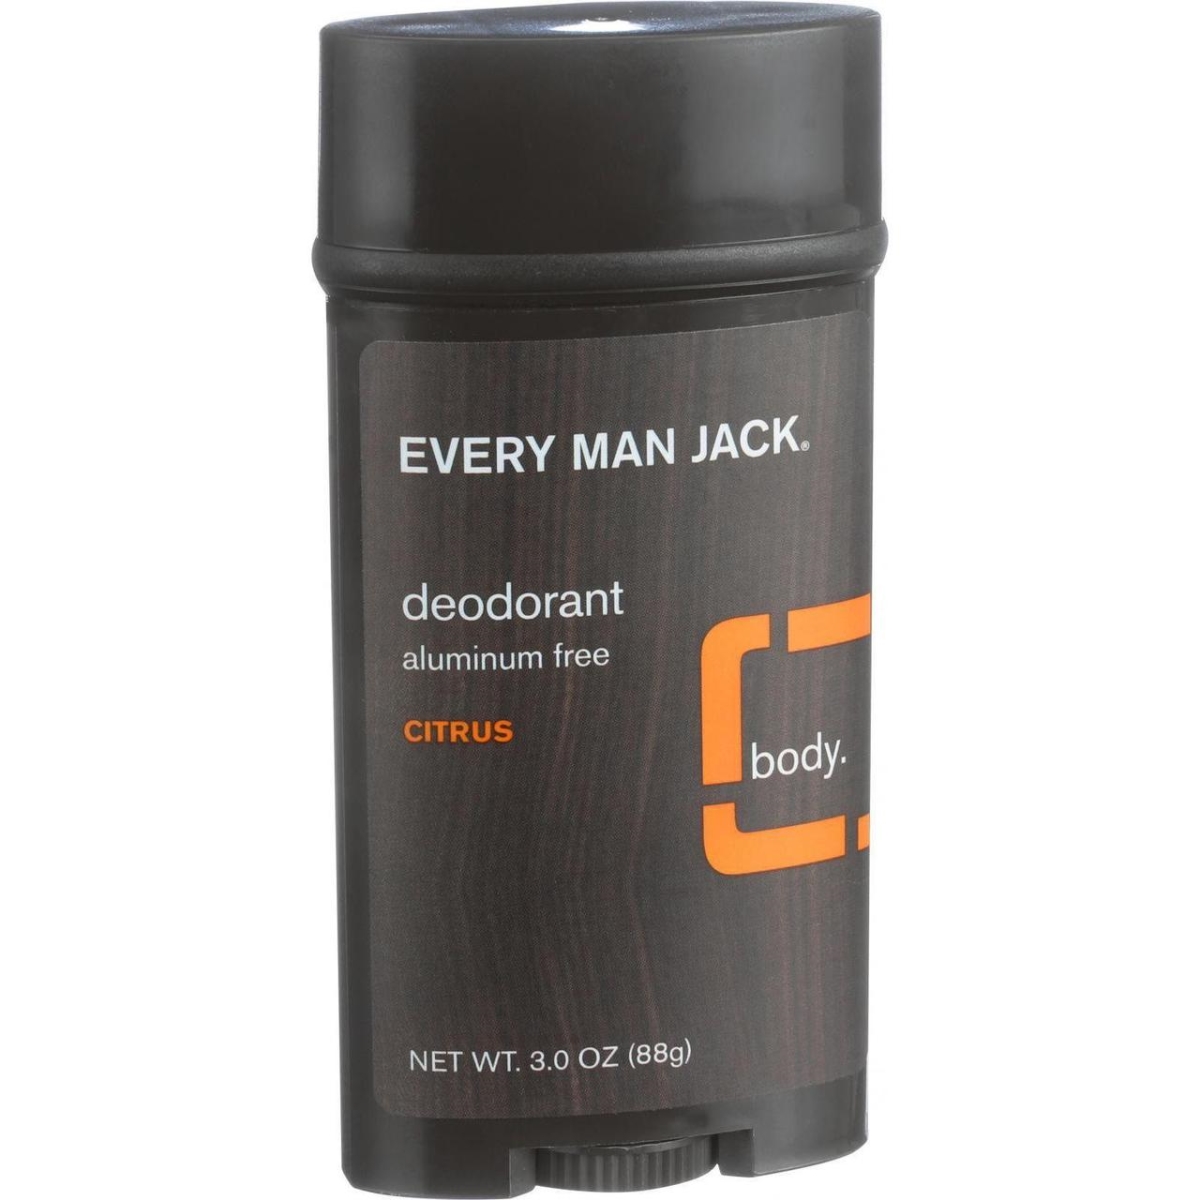 Hg0689497 3 Oz Aluminum Free Body Deodorant, Citrus